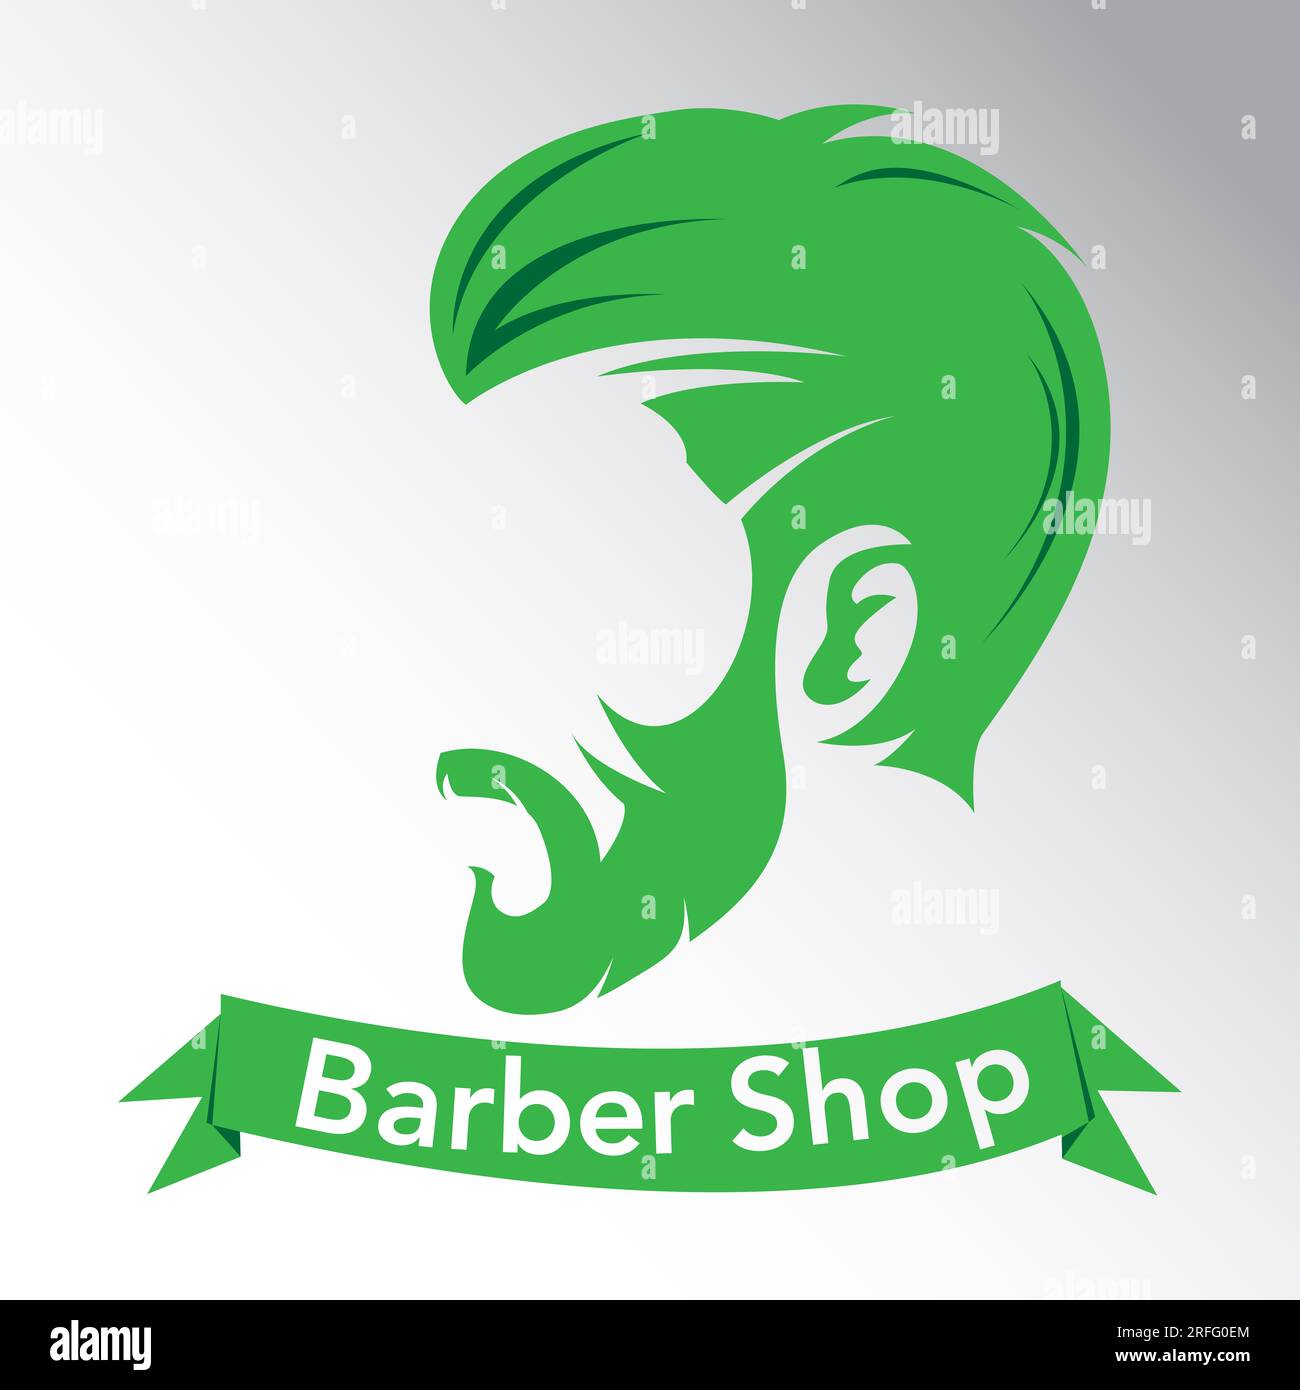 Logo Barber Shop, logo de style minimaliste, logo de couleur verte, tête d'homme avec style hipster, ruban de texte vert, adapté à la mode masculine et aux médias sociaux Banque D'Images